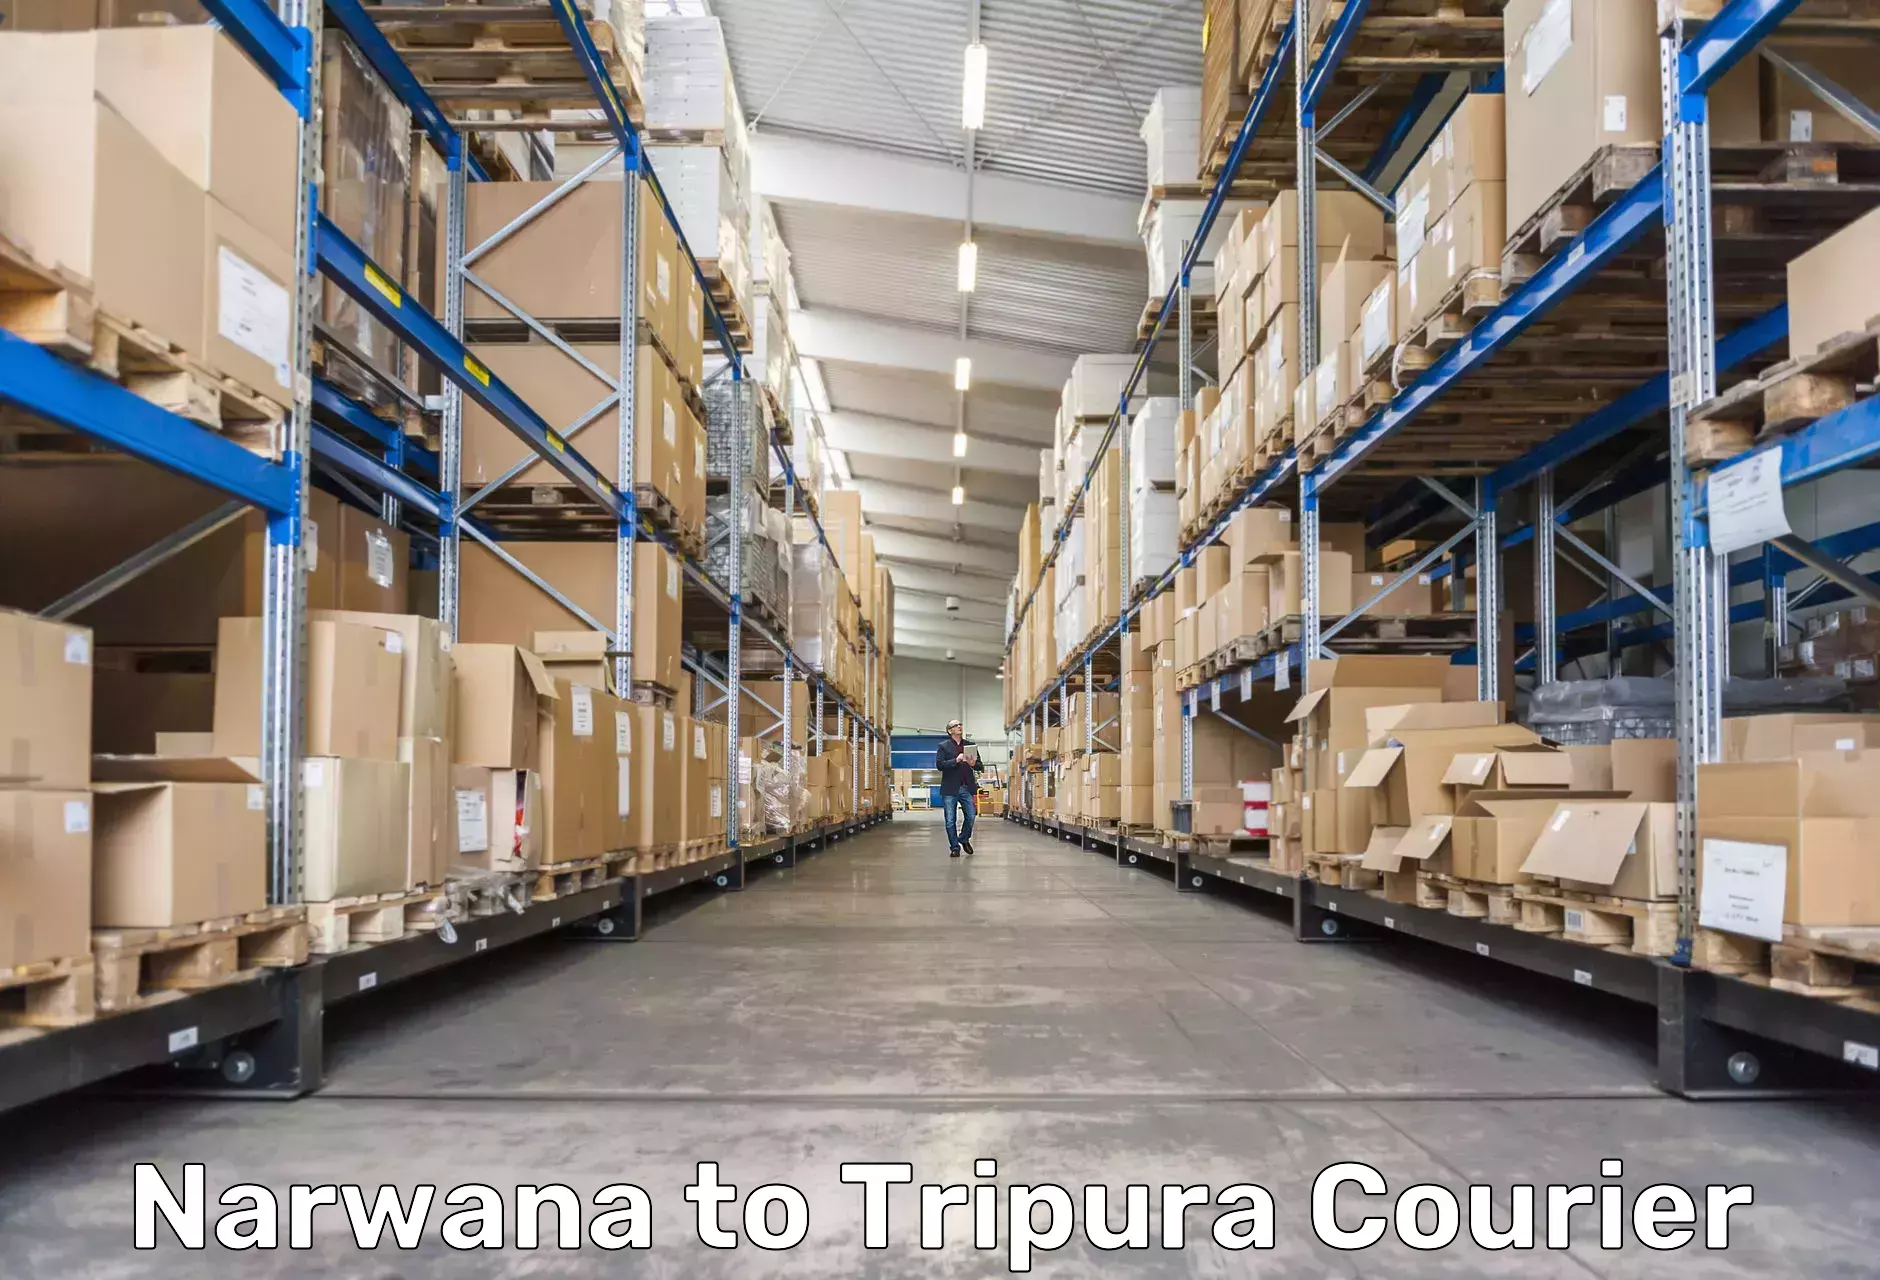 Tracking updates in Narwana to Tripura